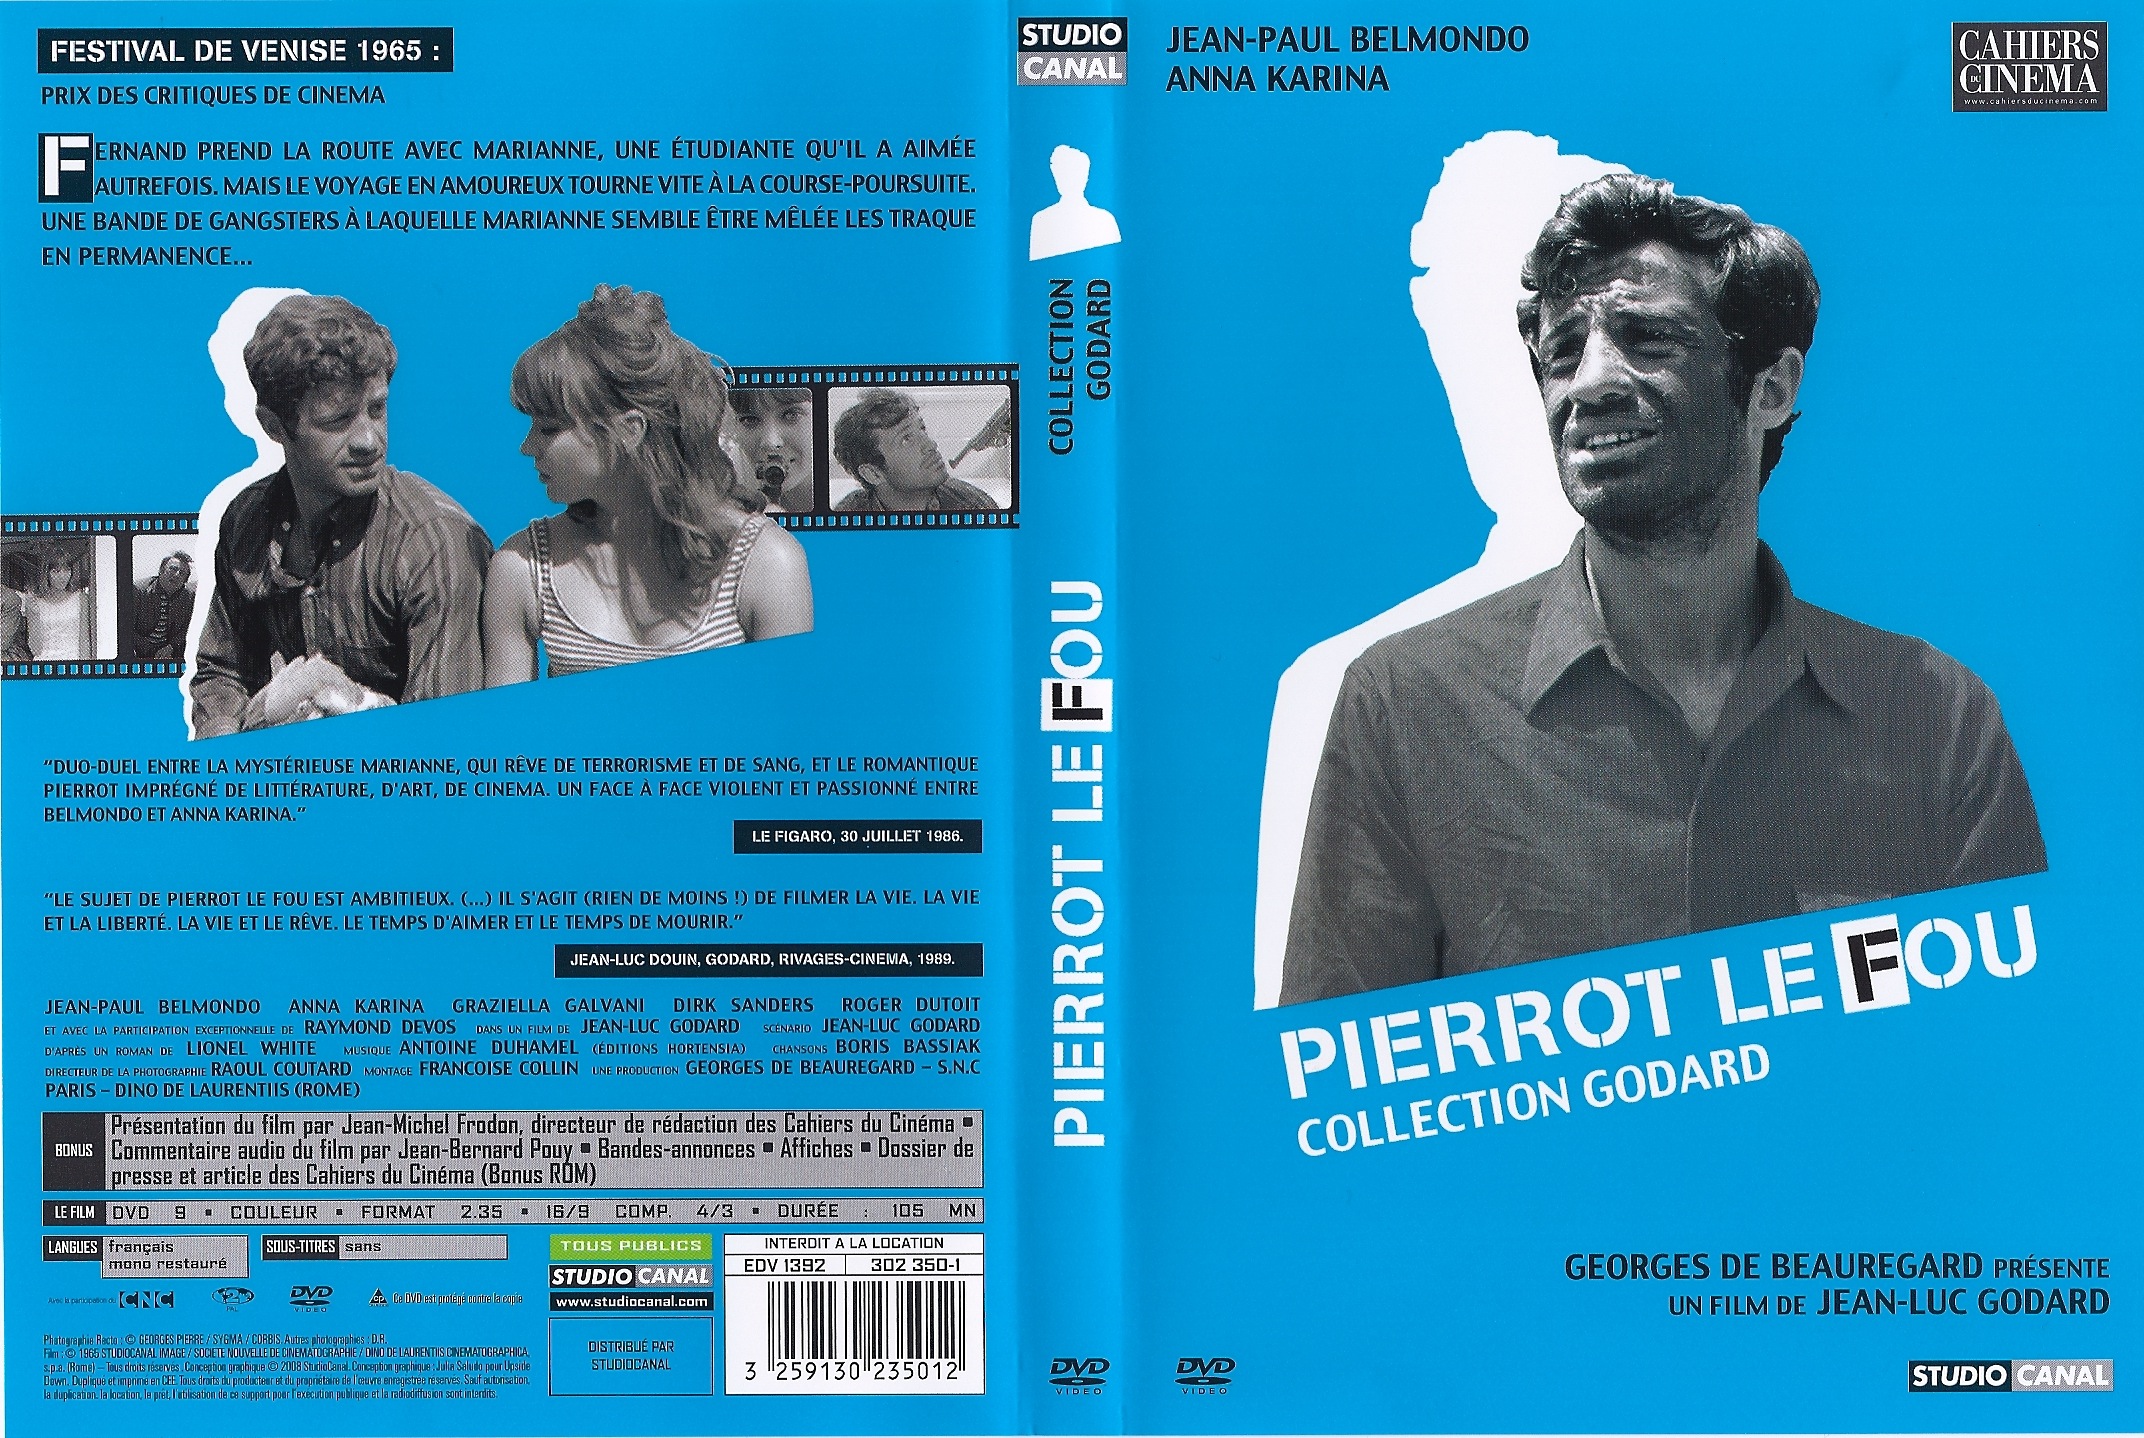 Jaquette DVD Pierrot le fou v3